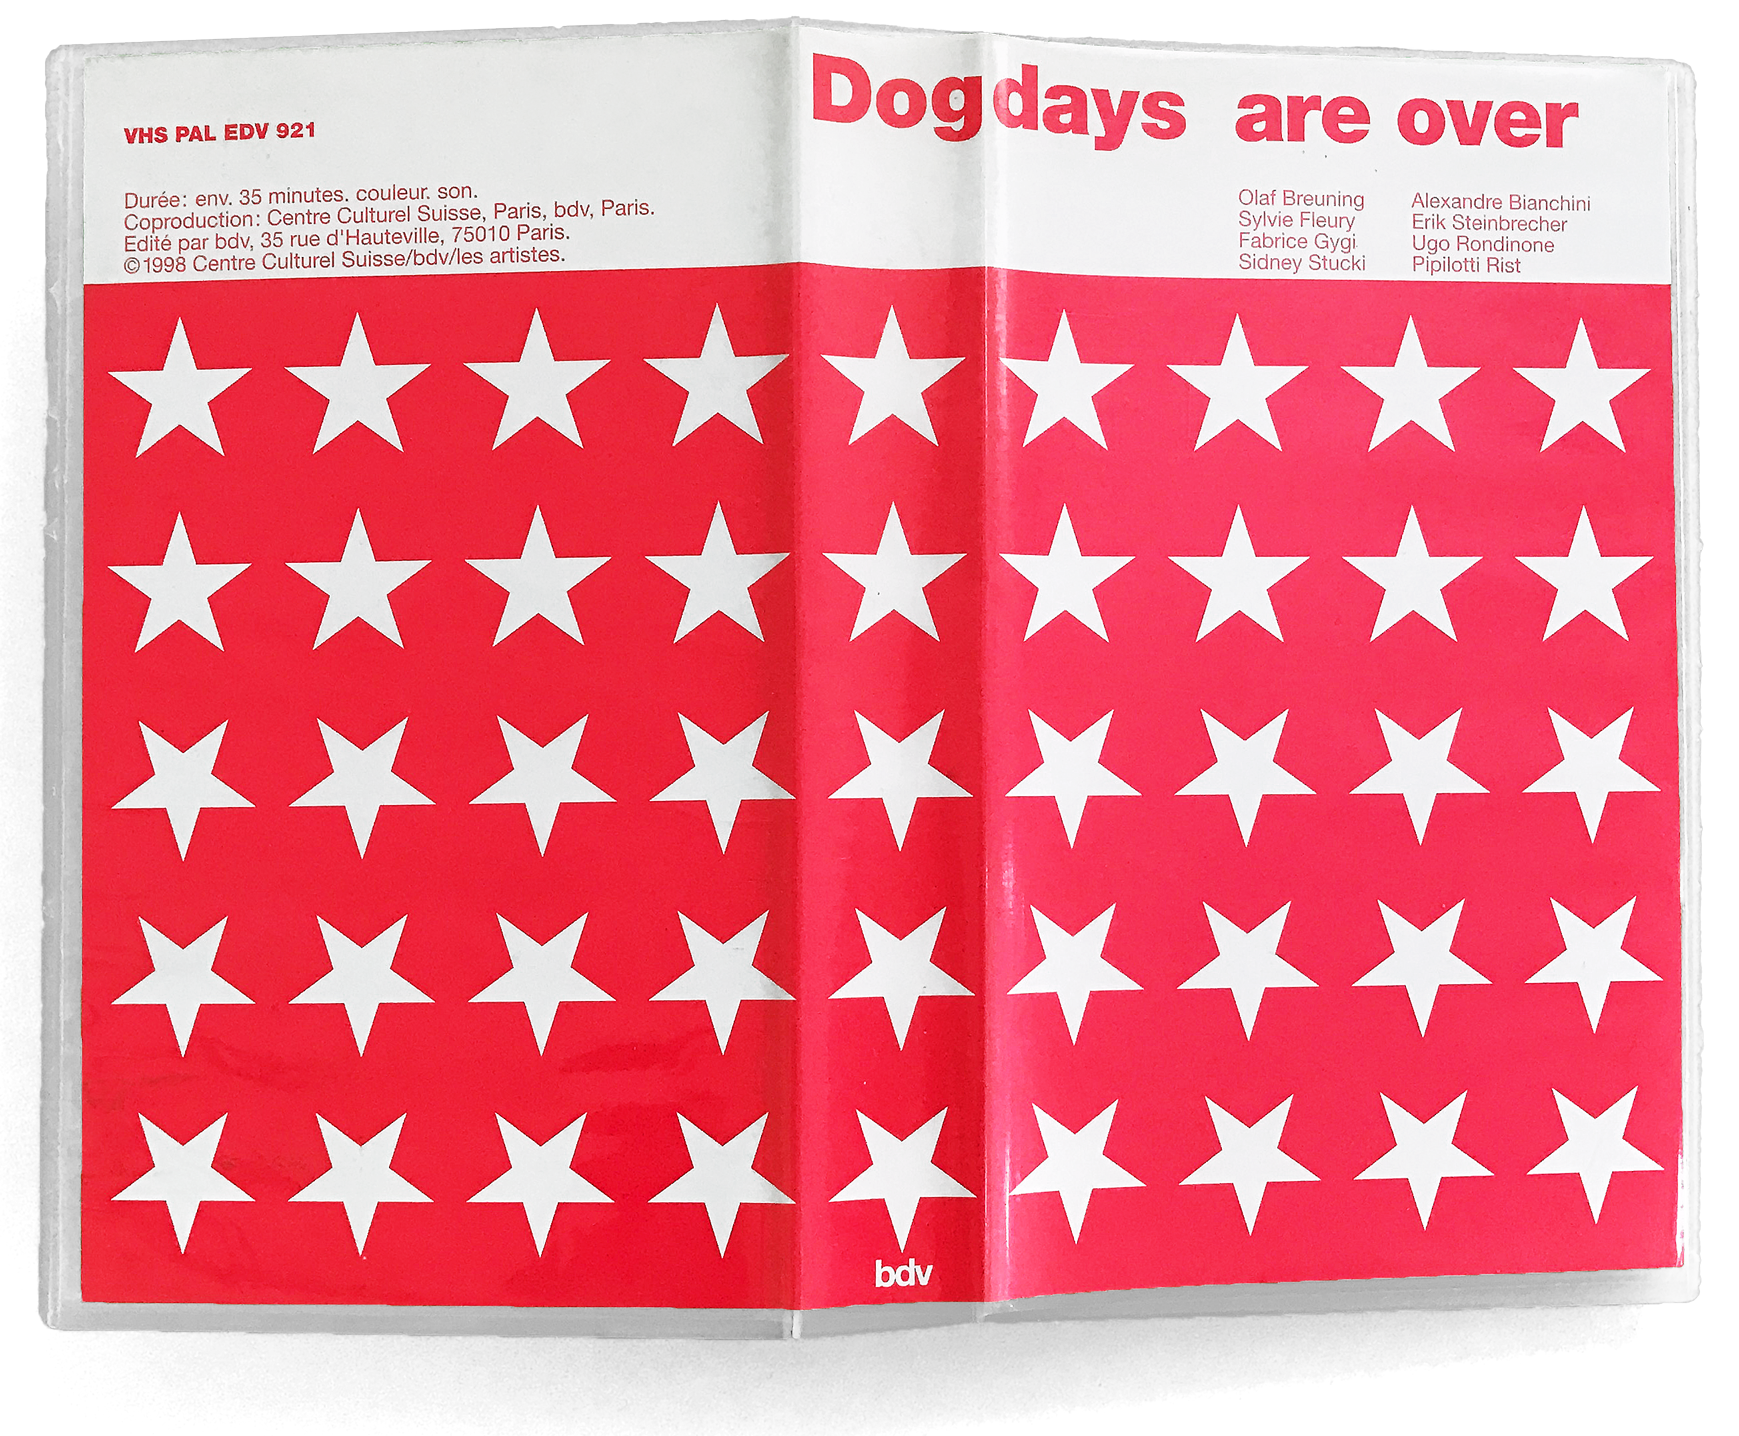 Pochette de la VHS éditée à l’occasion de l’exposition «Dogdays Are Over, la vidéo comme pratique artistique dans l’art contemporain suisse» au Centre culturel suisse de Paris. Commissariat: Nicolas Tremblay.